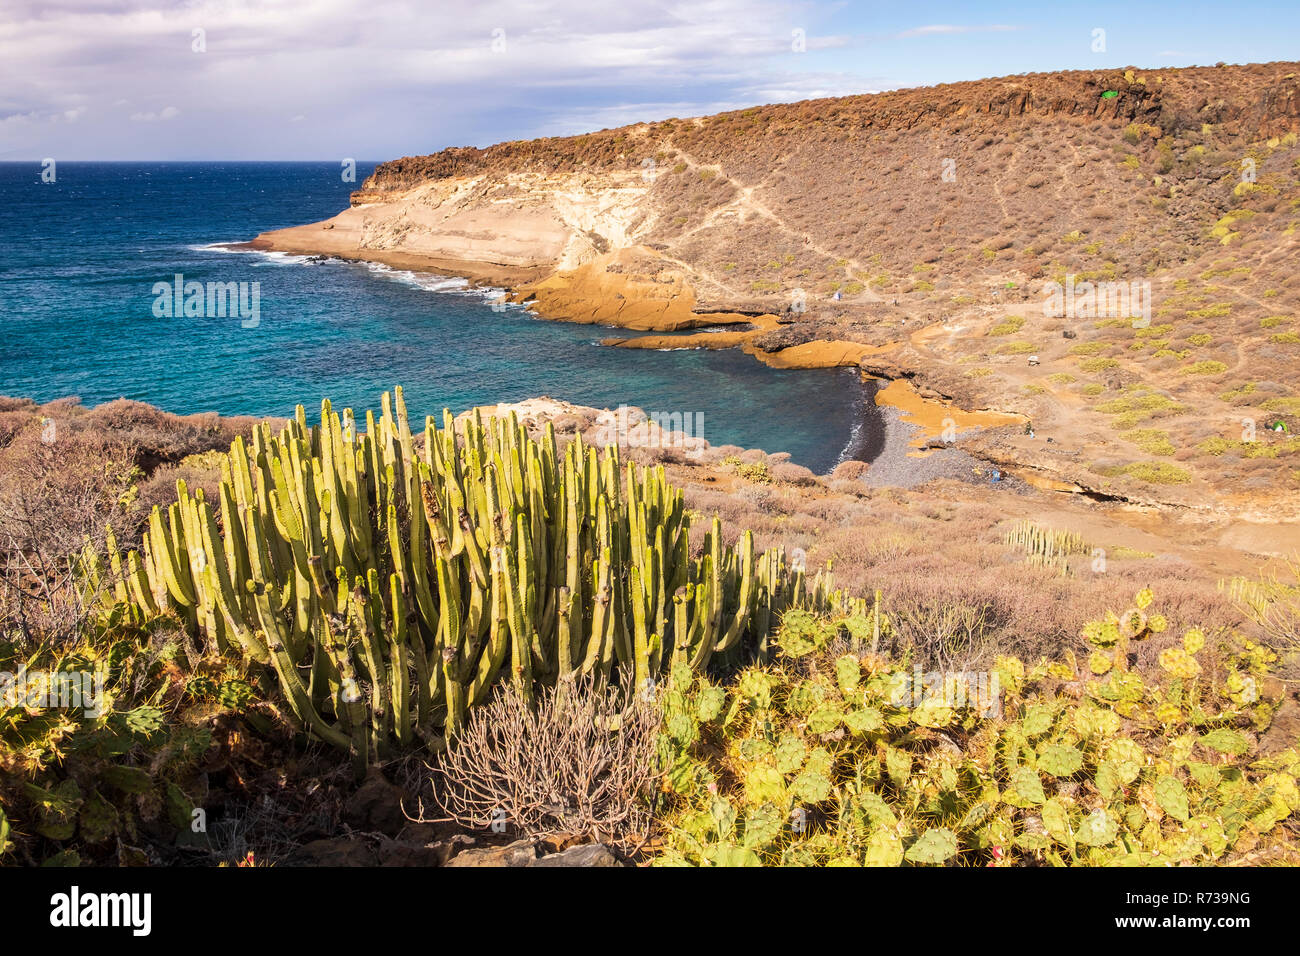 Cactus cardón crecen a lo largo de una sección de la subdesarrollada Costa Adeje Costa cerca Playa Paraiso, Tenerife, Islas Canarias, España Foto de stock